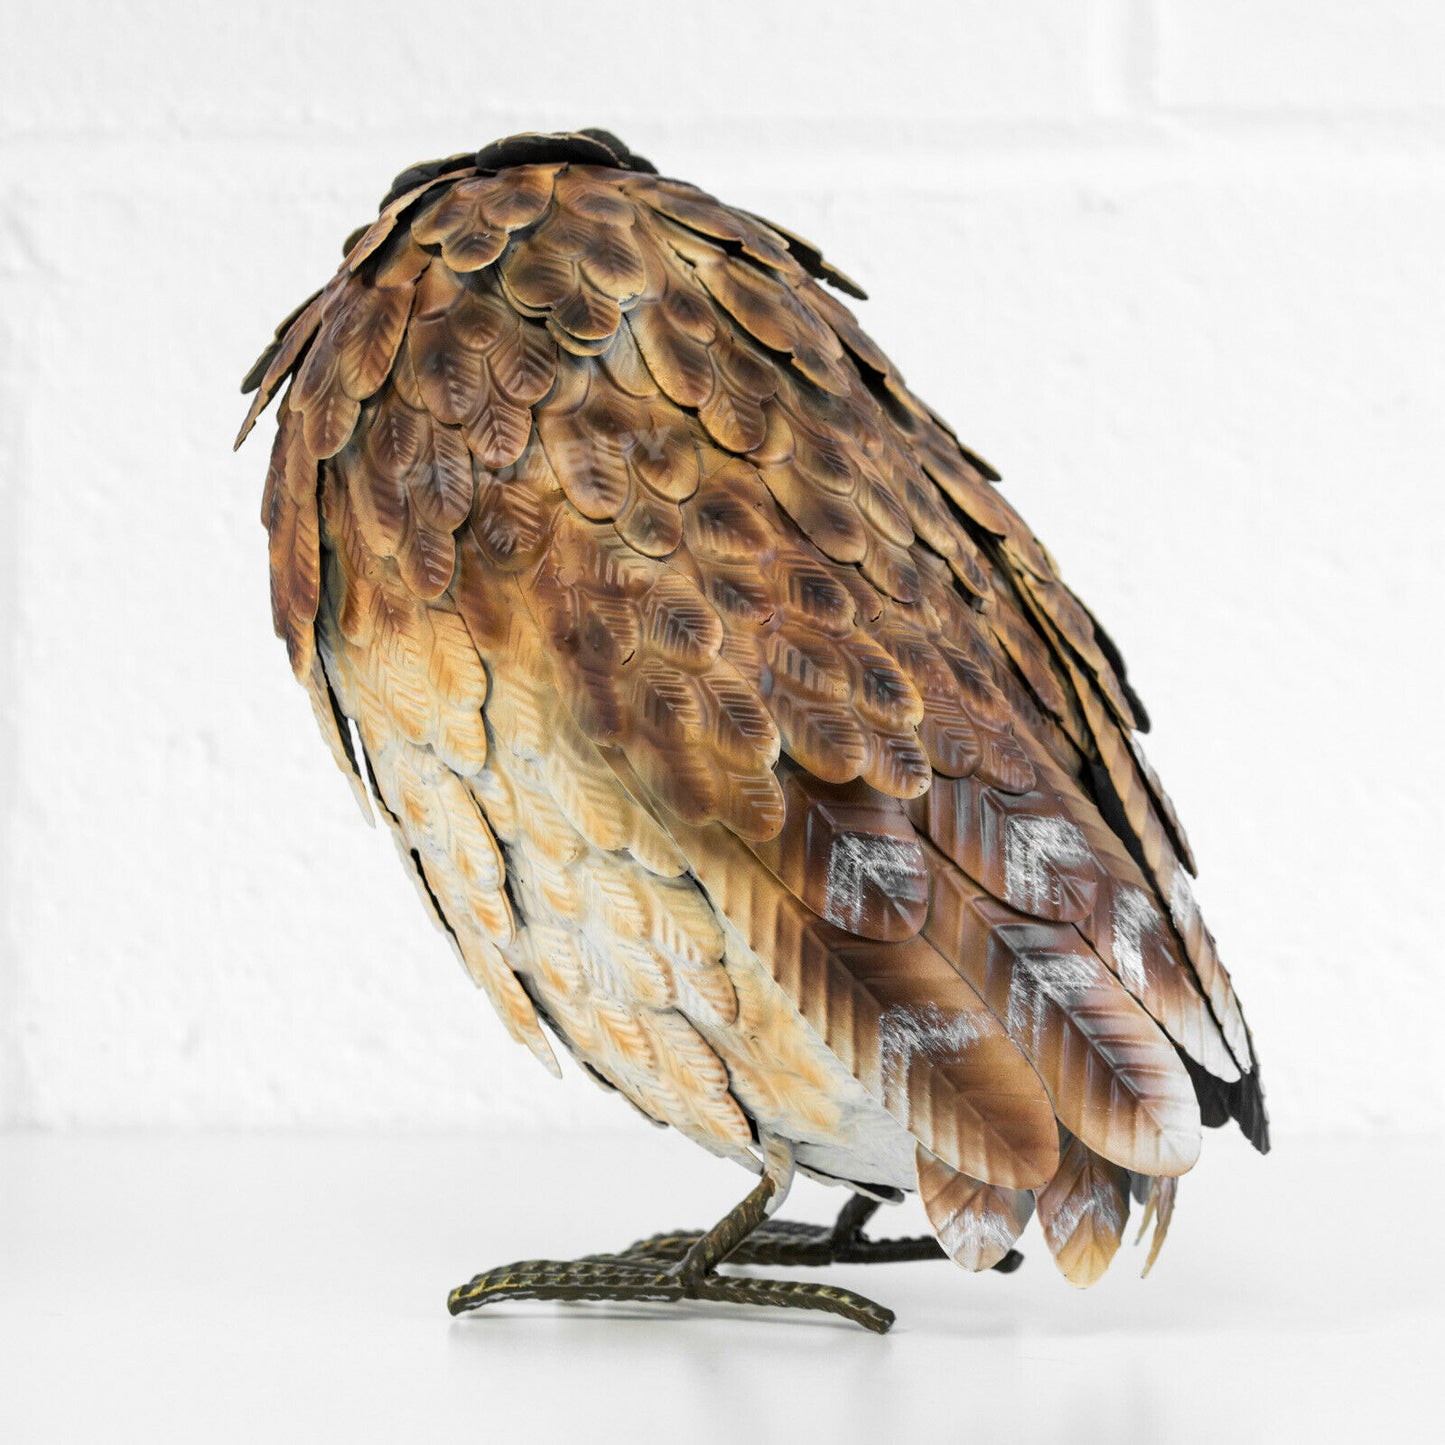 Brown Owl Metal 21cm Garden Ornament